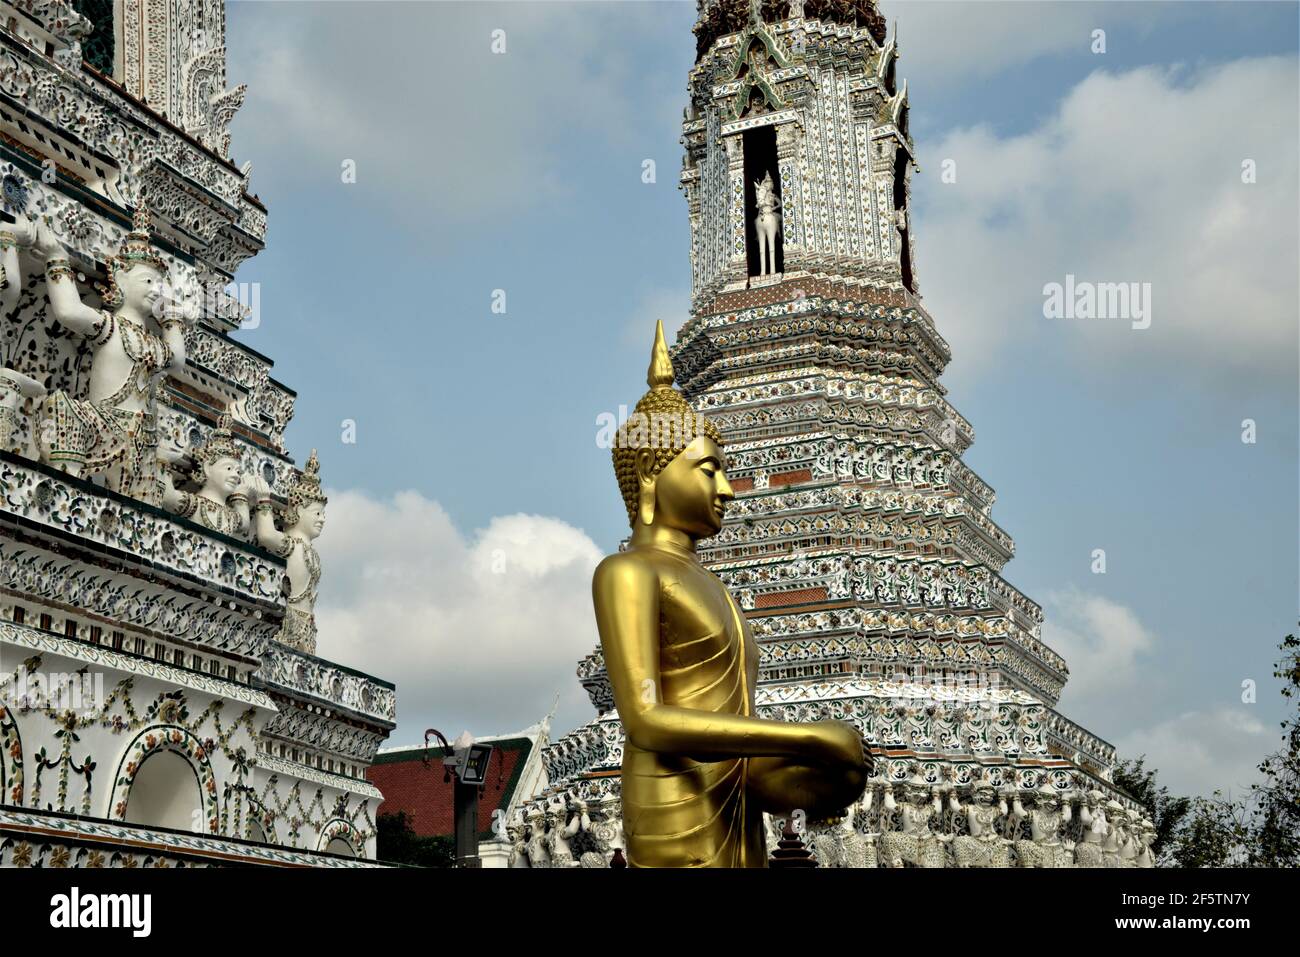 Wat Arun est un complexe de temples bouddhistes à Bangkok, dans le quartier très peuplé de Thonburi, sur la rive droite de la rivière Chao Phraya Banque D'Images